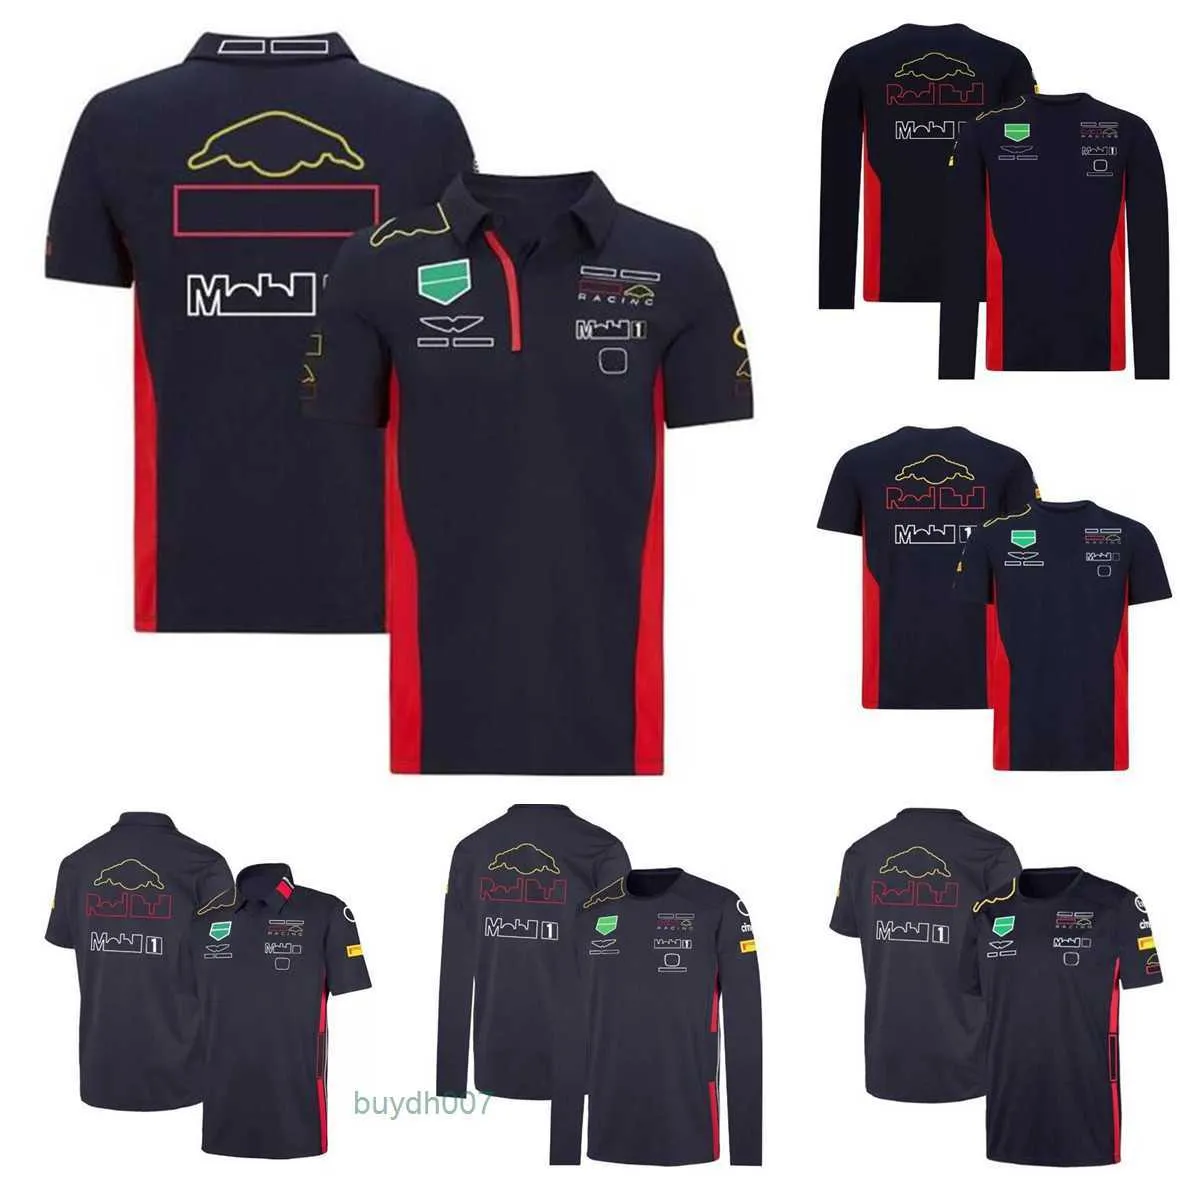 Pzjo Men's Polos F1 F1式1 Tシャツサマーチームポロスーツ同じスタイルカスタマイズ可能